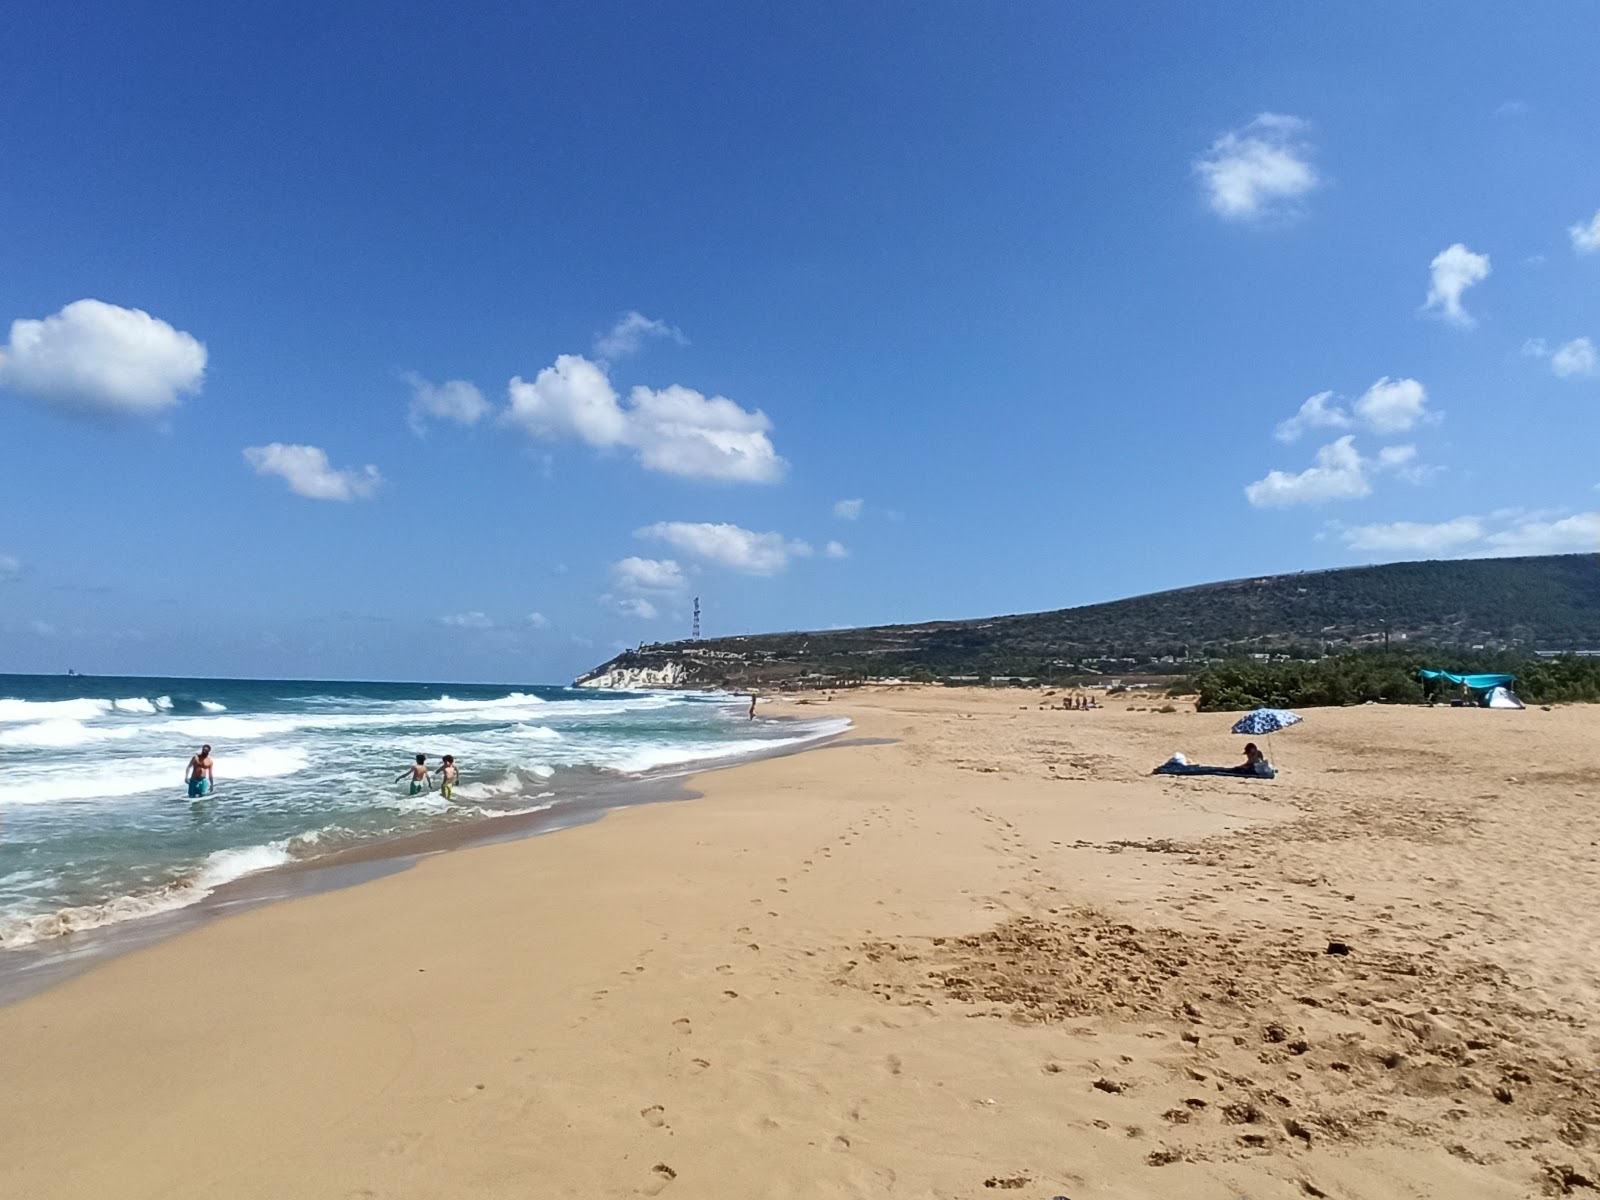 Photo de Yefet's beach - endroit populaire parmi les connaisseurs de la détente